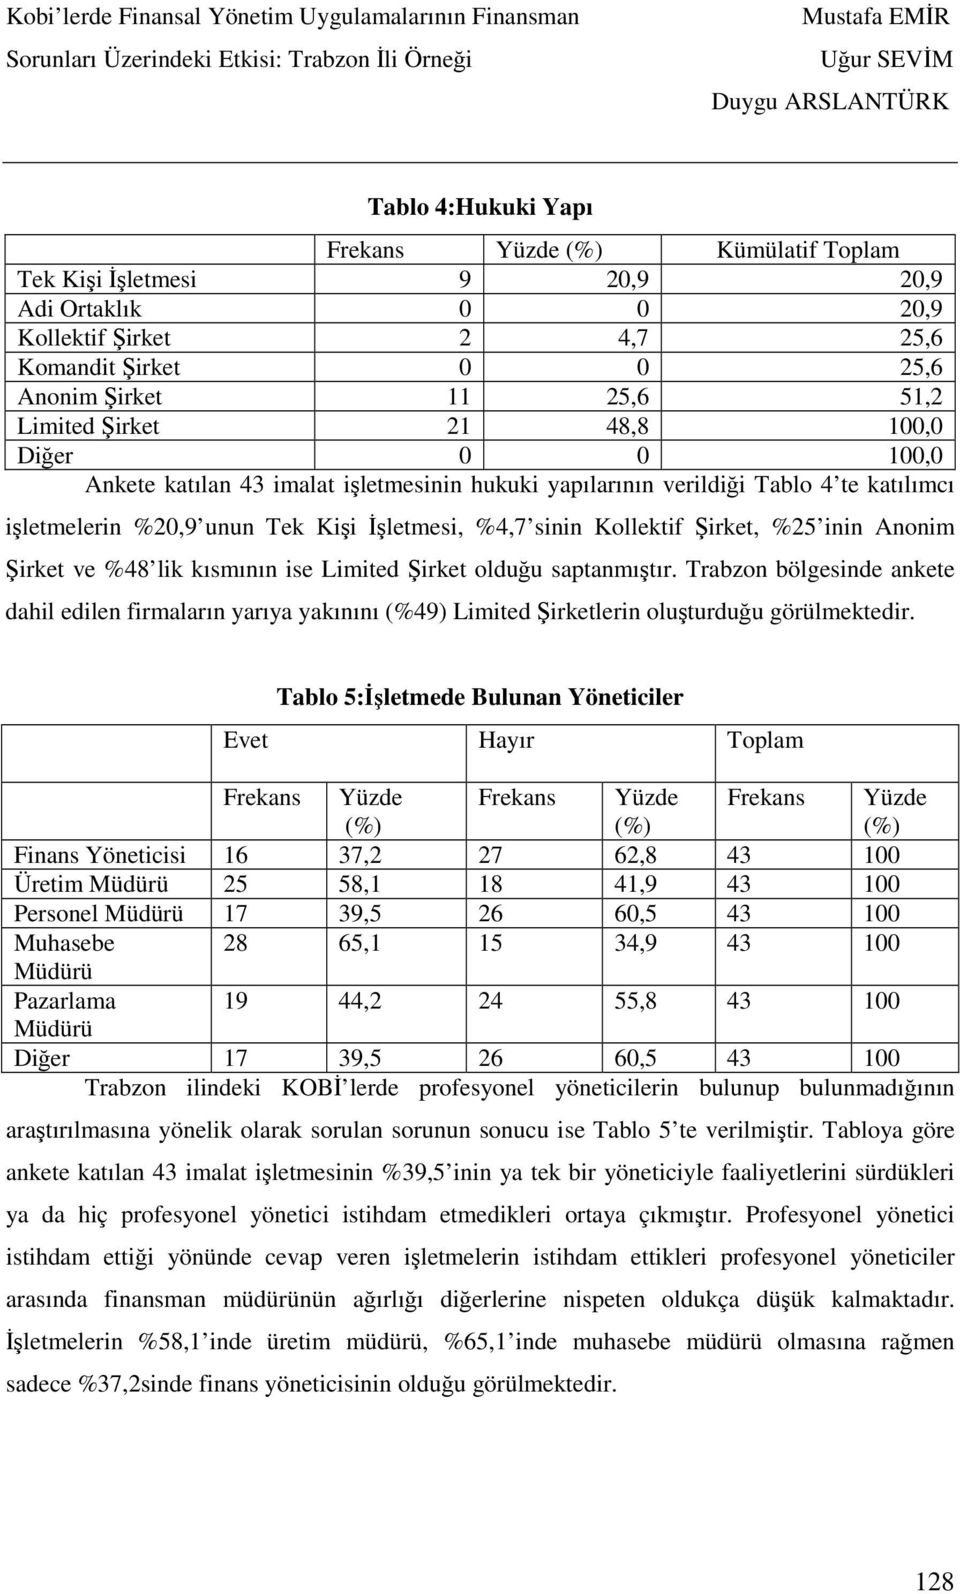 kısmının ise Limited Şirket olduğu saptanmıştır. Trabzon bölgesinde ankete dahil edilen firmaların yarıya yakınını (%49) Limited Şirketlerin oluşturduğu görülmektedir.